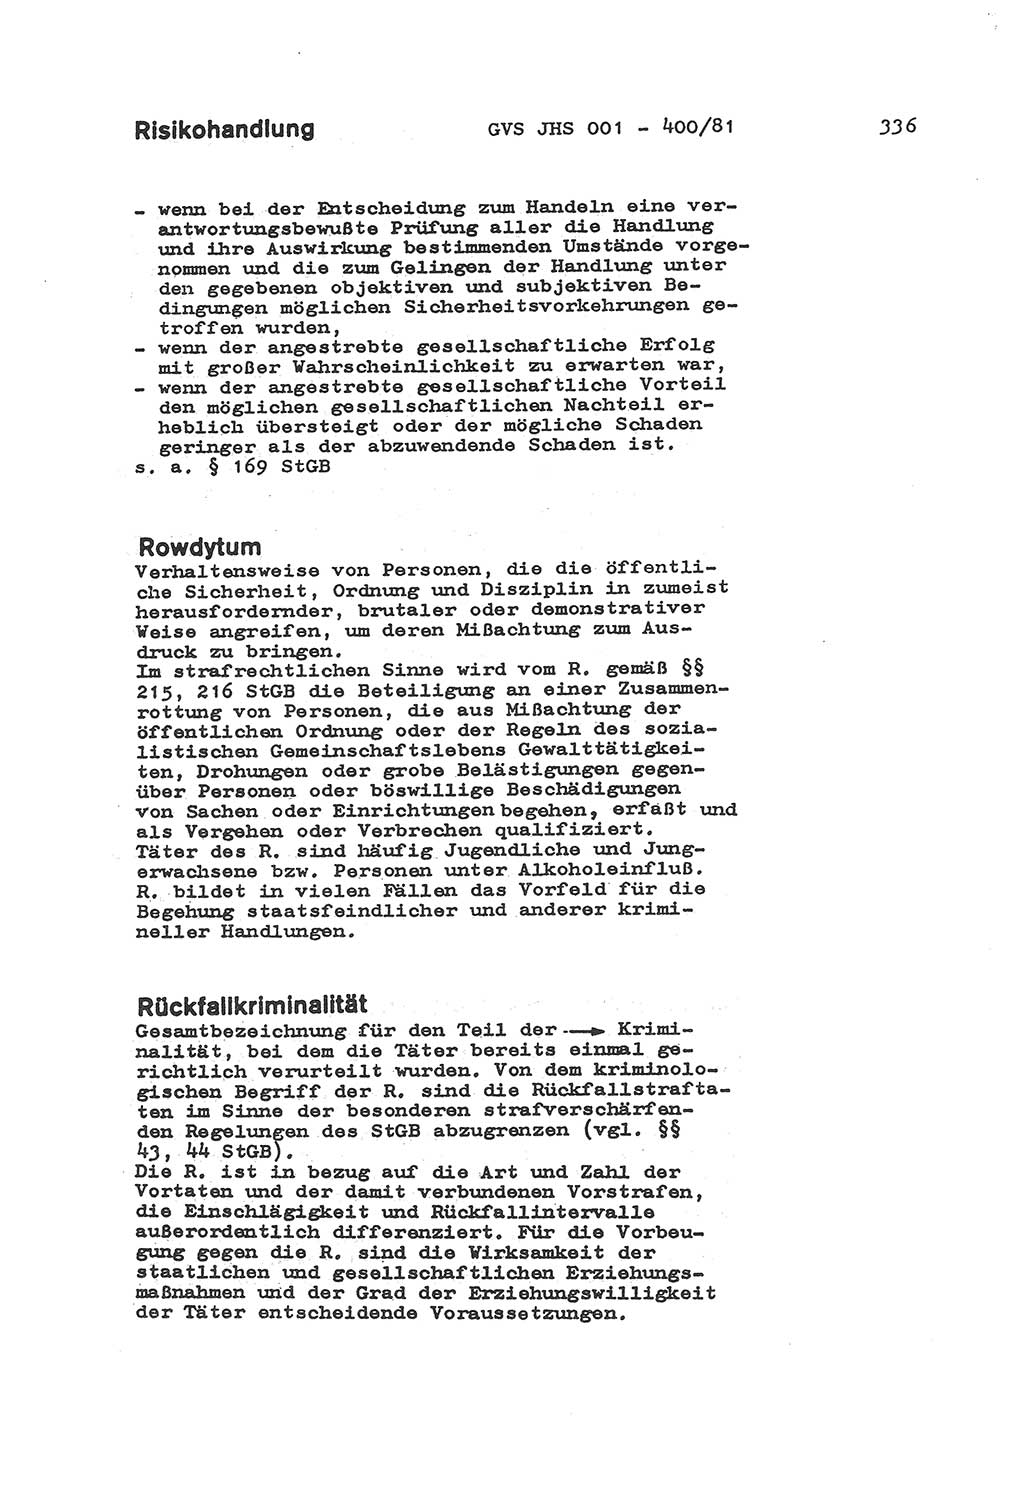 Wörterbuch der politisch-operativen Arbeit, Ministerium für Staatssicherheit (MfS) [Deutsche Demokratische Republik (DDR)], Juristische Hochschule (JHS), Geheime Verschlußsache (GVS) o001-400/81, Potsdam 1985, Blatt 336 (Wb. pol.-op. Arb. MfS DDR JHS GVS o001-400/81 1985, Bl. 336)